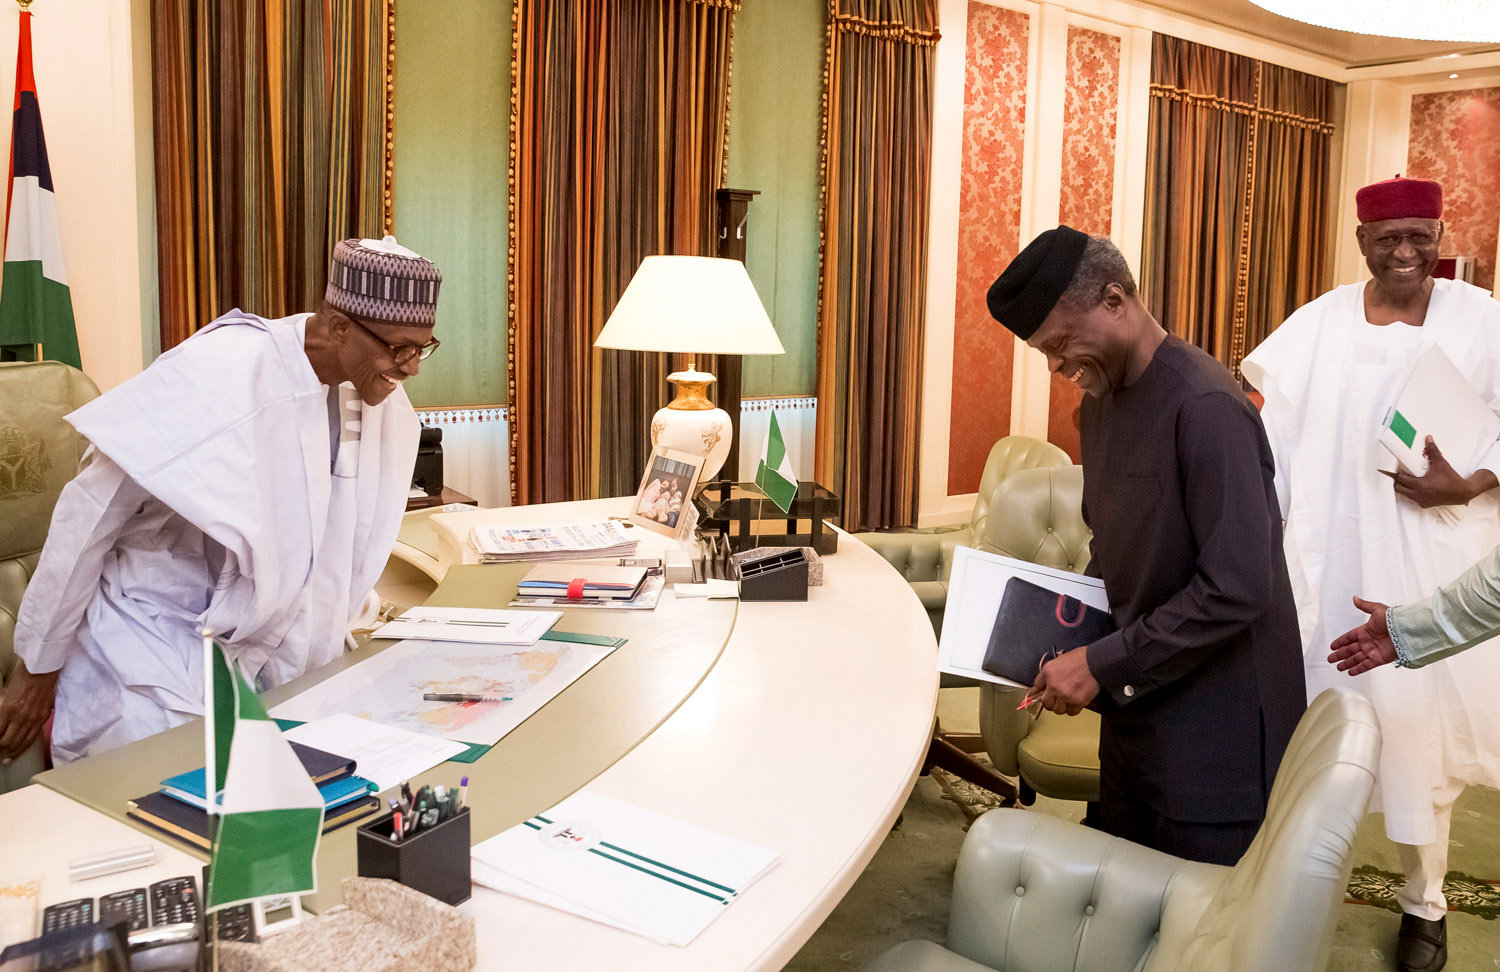 الرئيس النيجيرى ونائبه يبحثان الملفات المعلقة بسبب أجازته المرضية